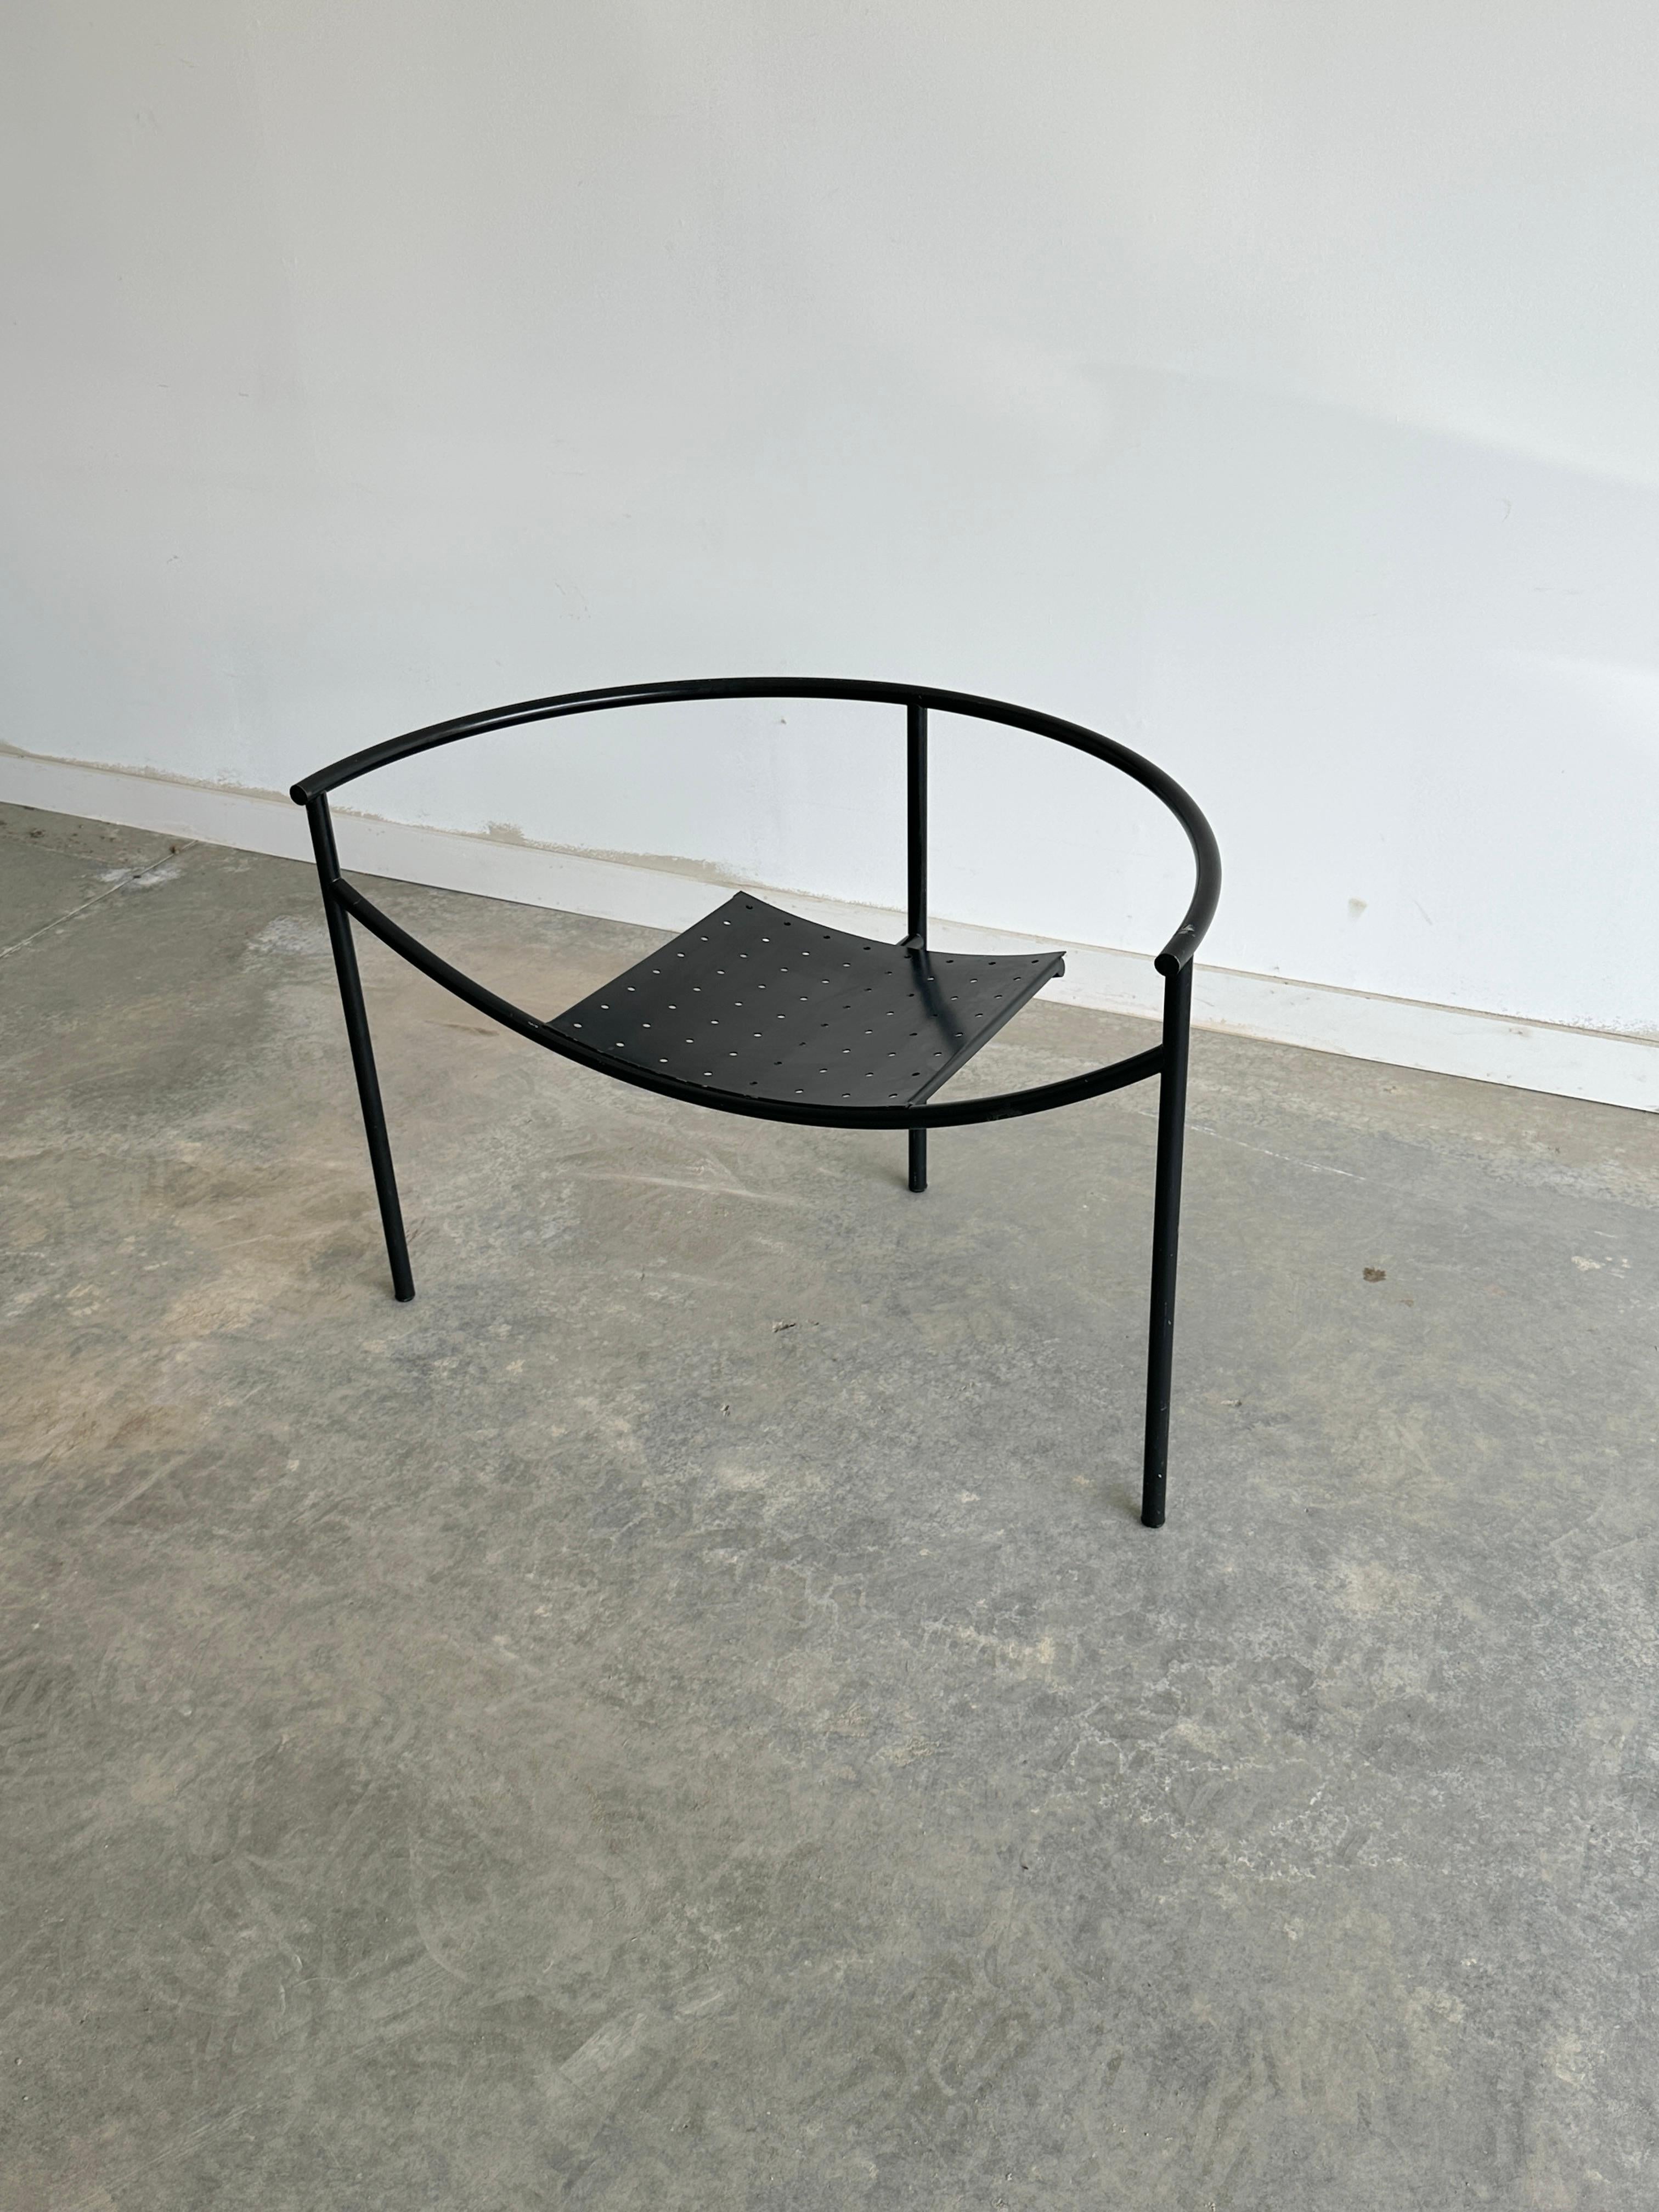 La chaise Philippe Starck Doctor Sonderbar est un meuble saisissant qui allie un design futuriste à une esthétique industrielle. Il est composé de tubes en acier chromé et de tôle perforée, créant une silhouette épurée et sculpturale. La chaise a